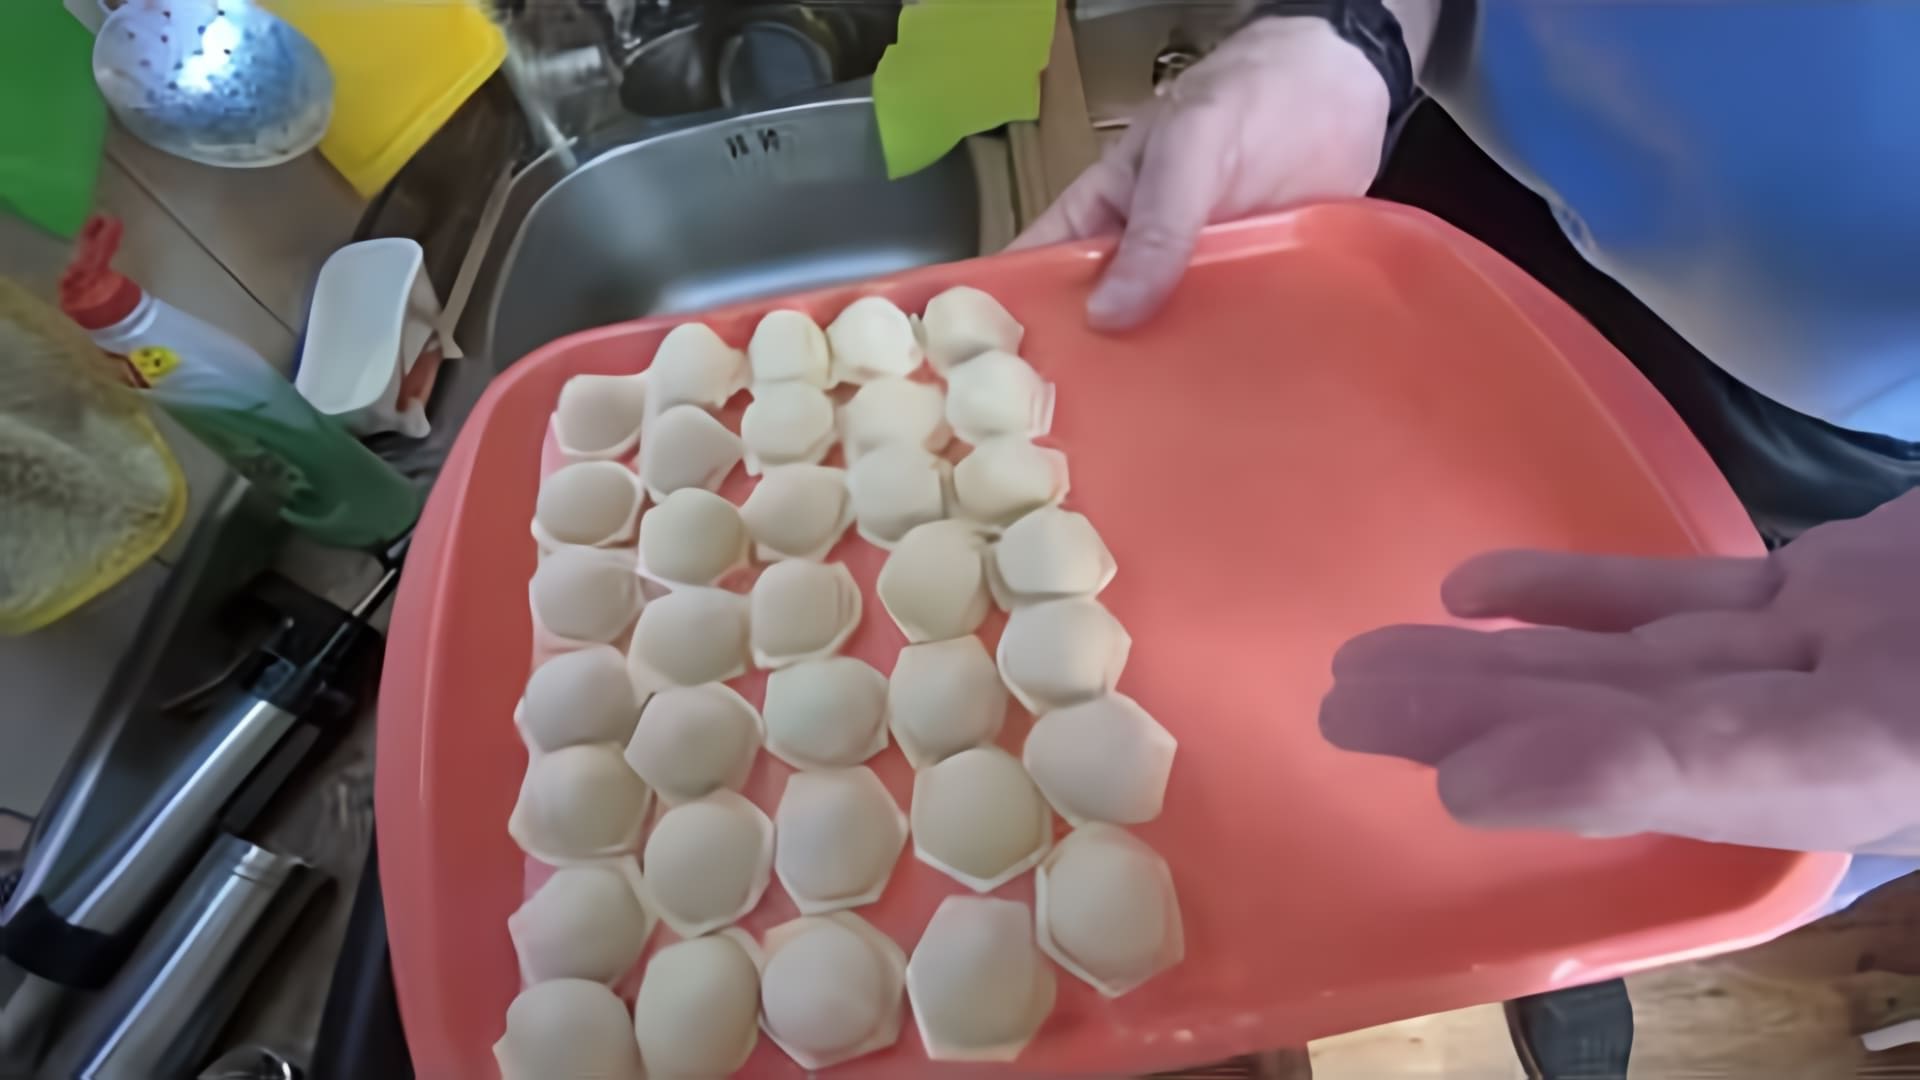 В этом видео демонстрируется процесс приготовления русских пельменей, которые были популярны в СССР